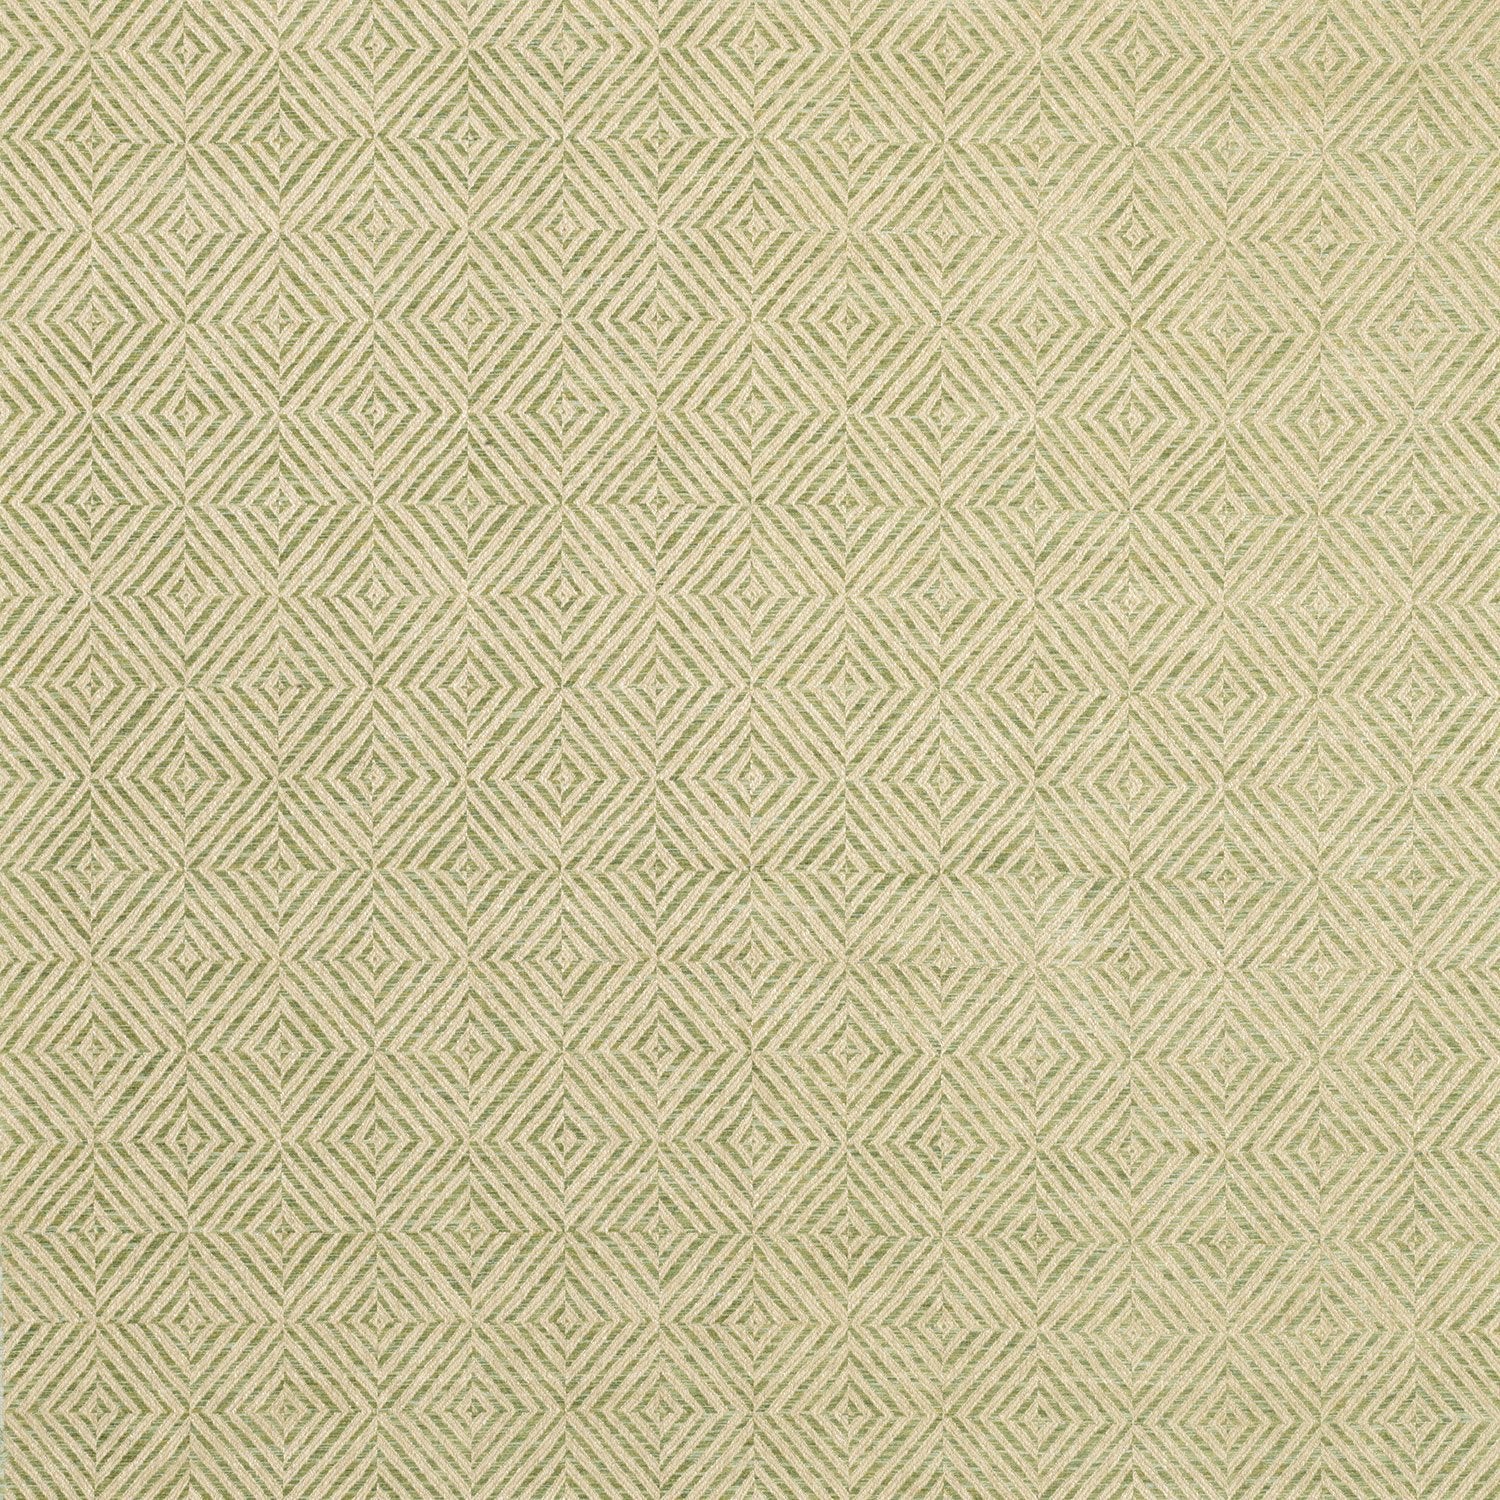 Nina Campbell Fabric - Umbria Assisi Eucalyptus NCF4260-03